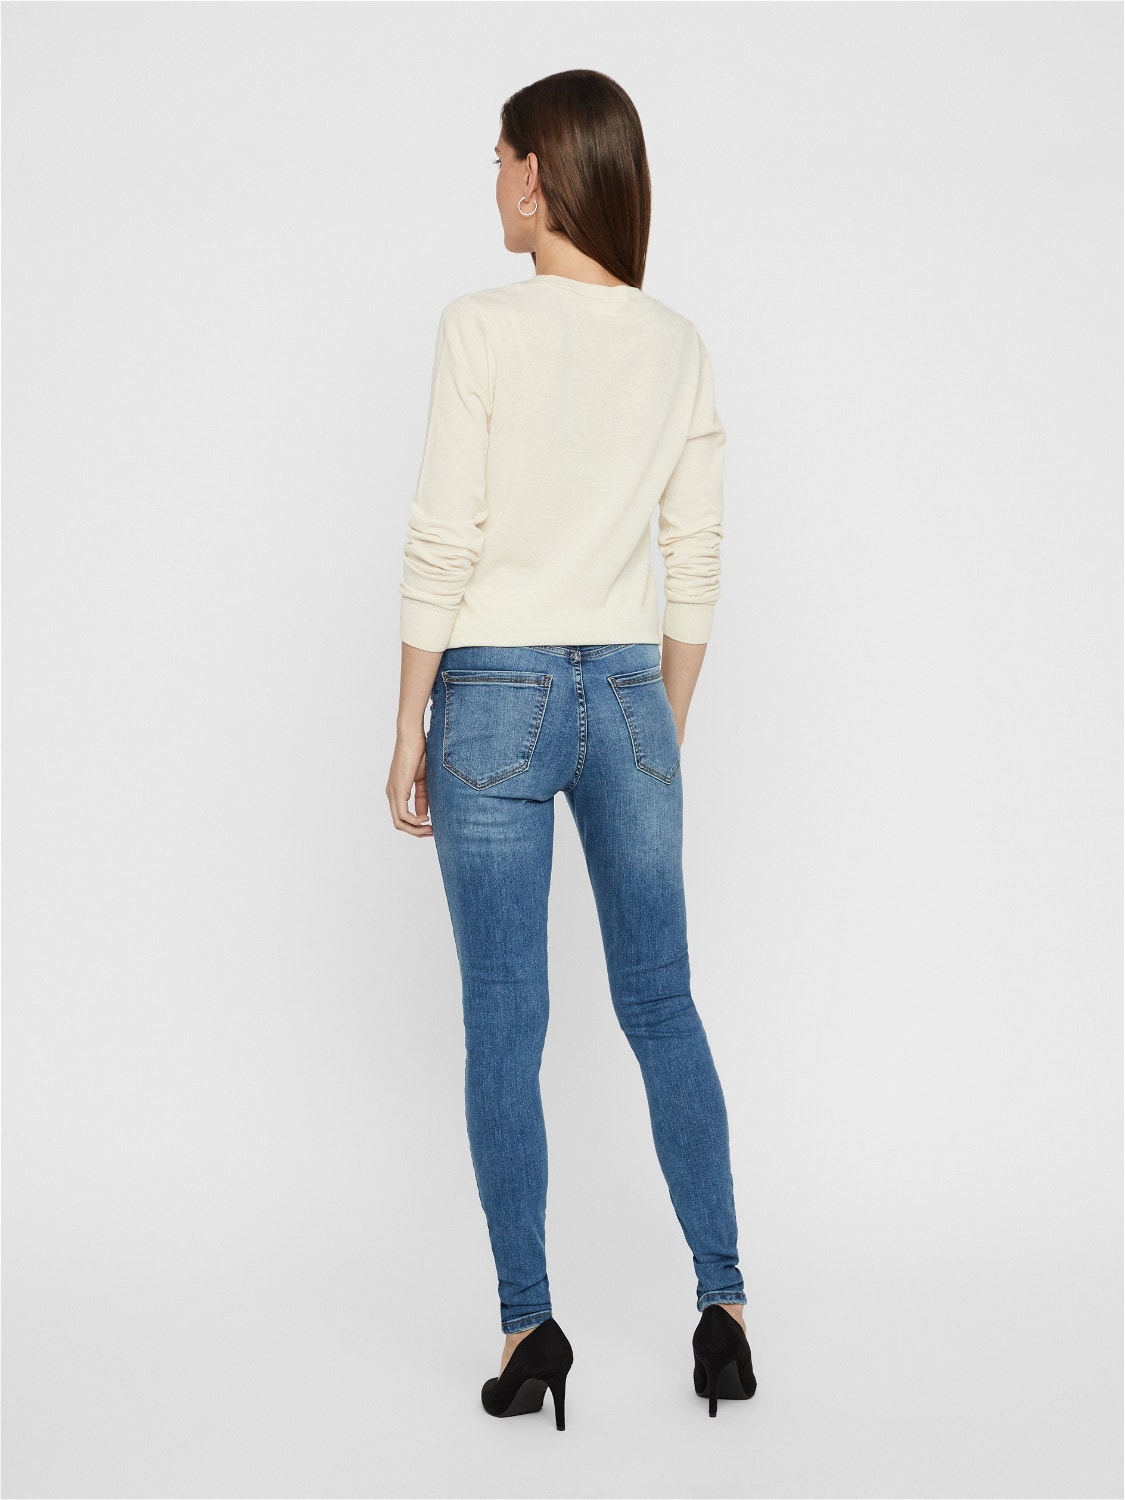 VMSOPHIA High Vero Blue Light Moda® rise Jeans | 